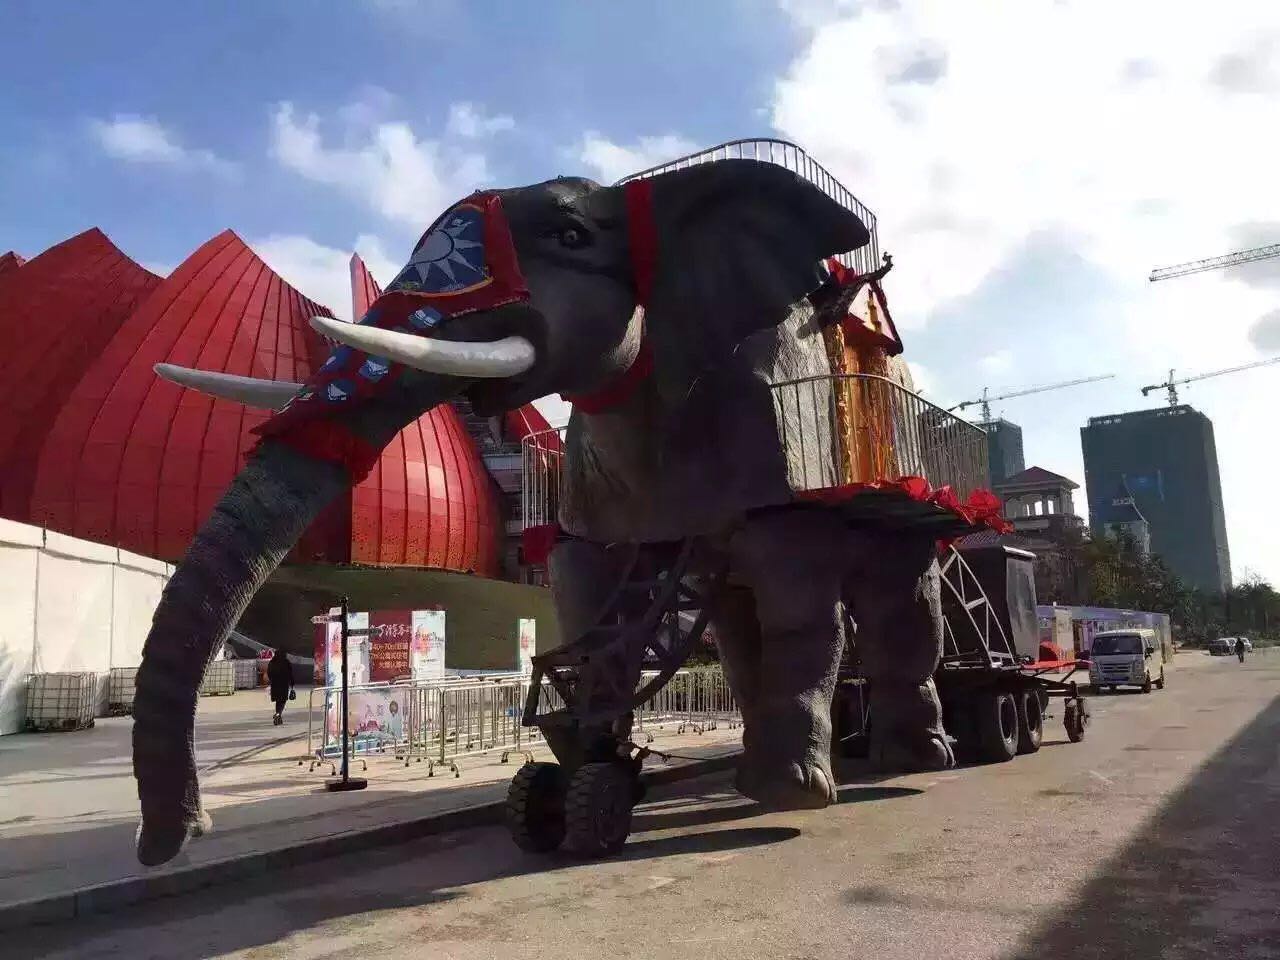 供应巡游动物雕塑 上海大型动物雕塑展览 专业制作